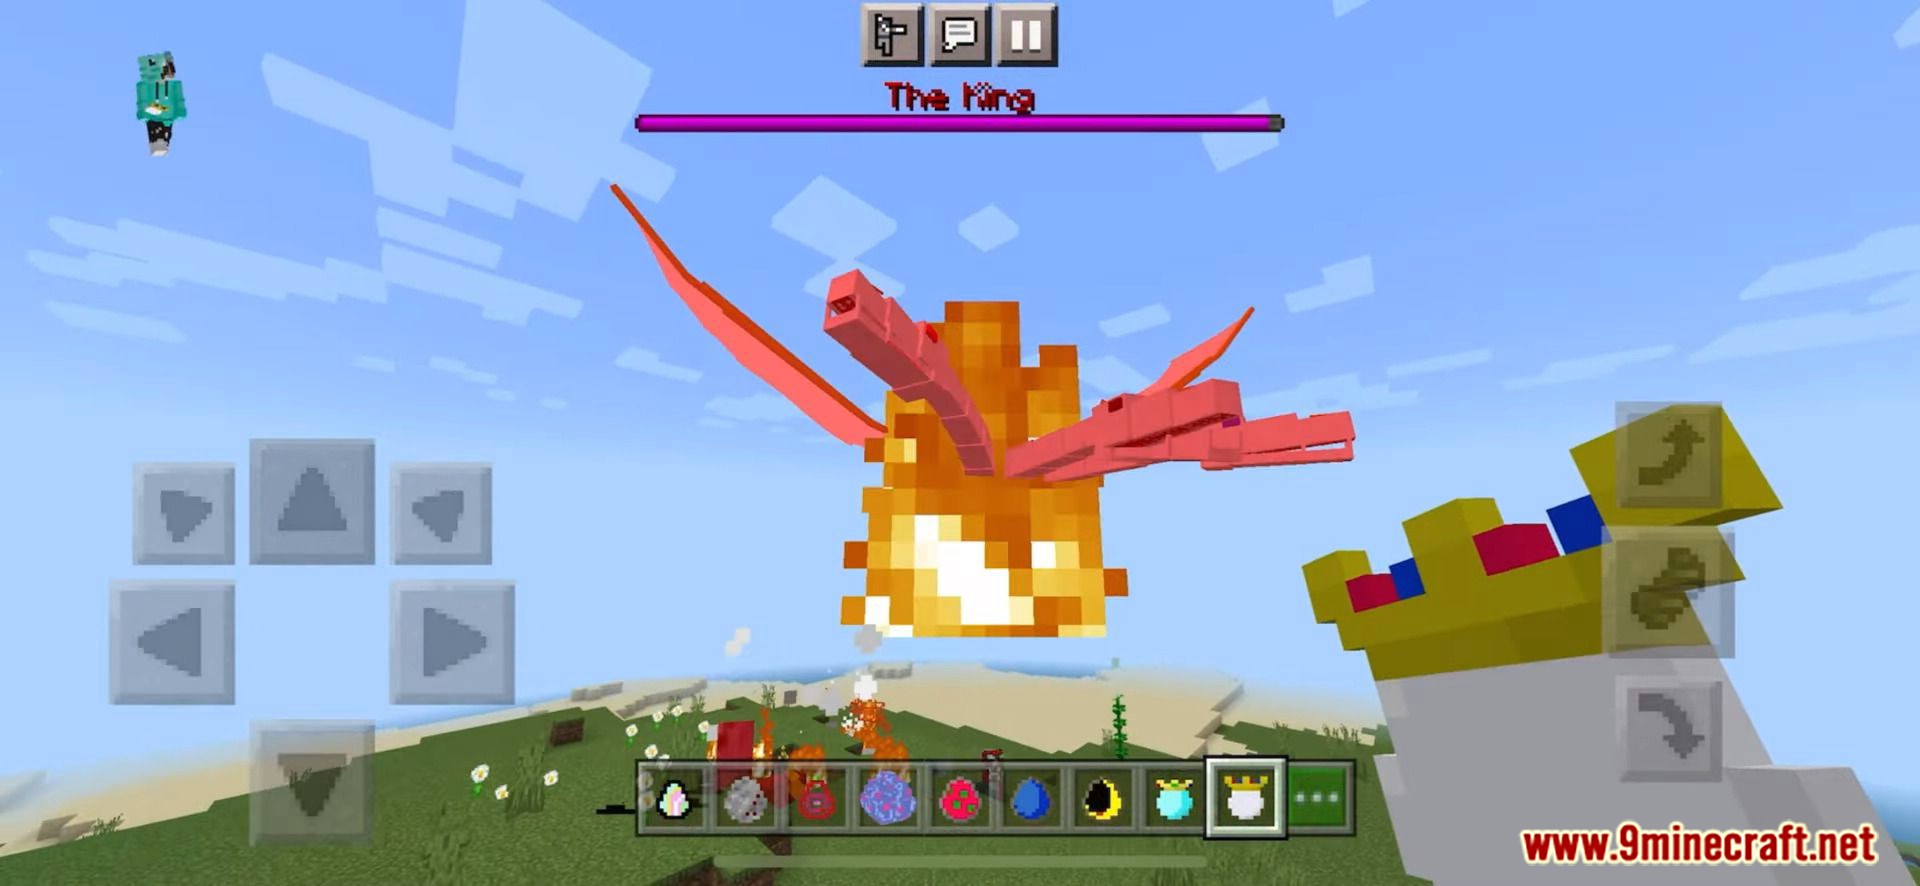 Crazy flight minecraft game! #minecraft #crazyminecraft